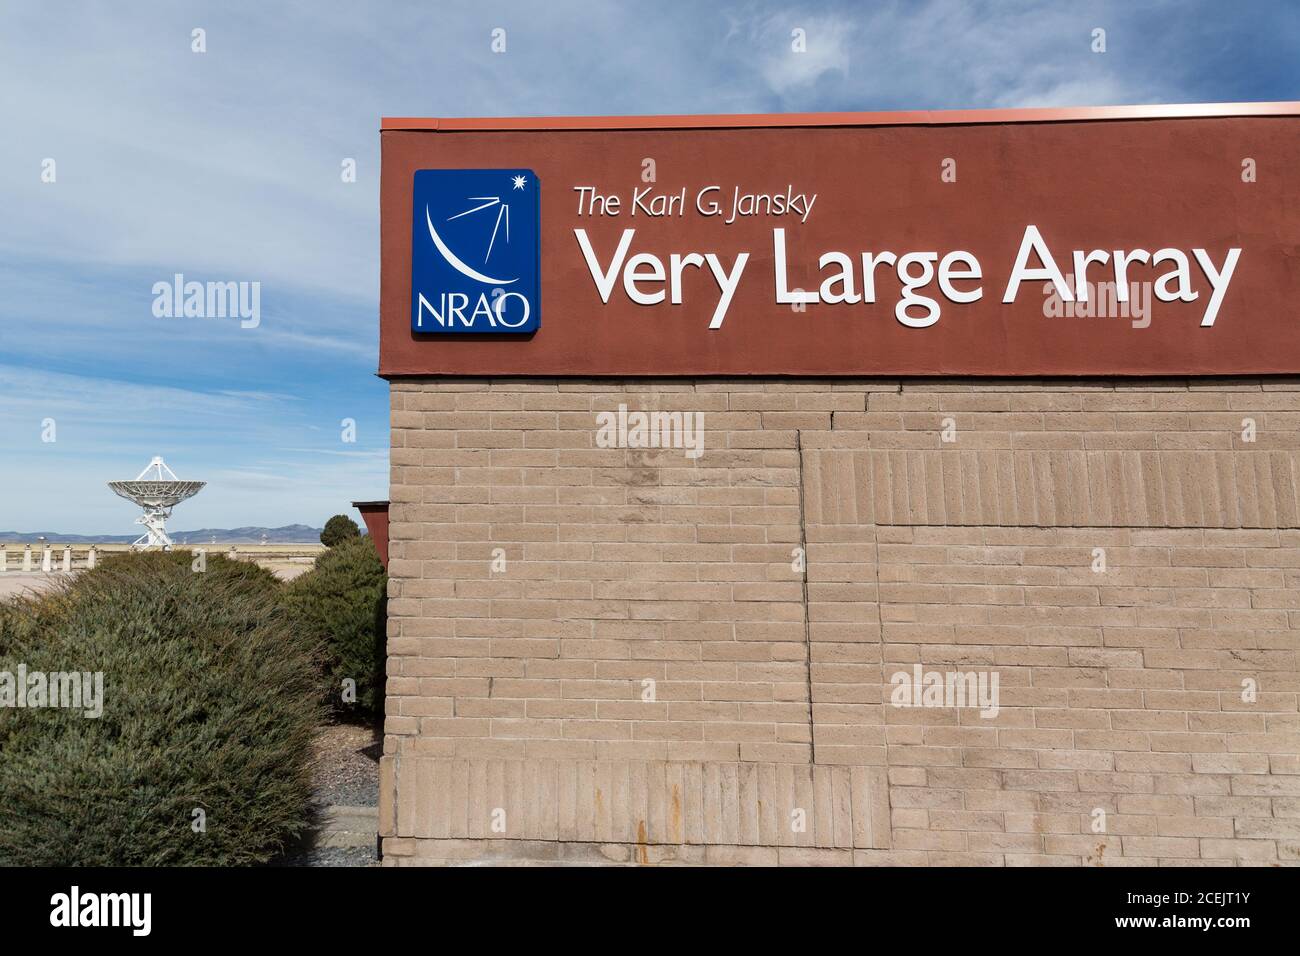 Centro de visitantes y antenas del observatorio astronómico Karl G. Jansky muy grande matriz radiotelescopio cerca de Magdalena, Nuevo México en los Estados Unidos Foto de stock